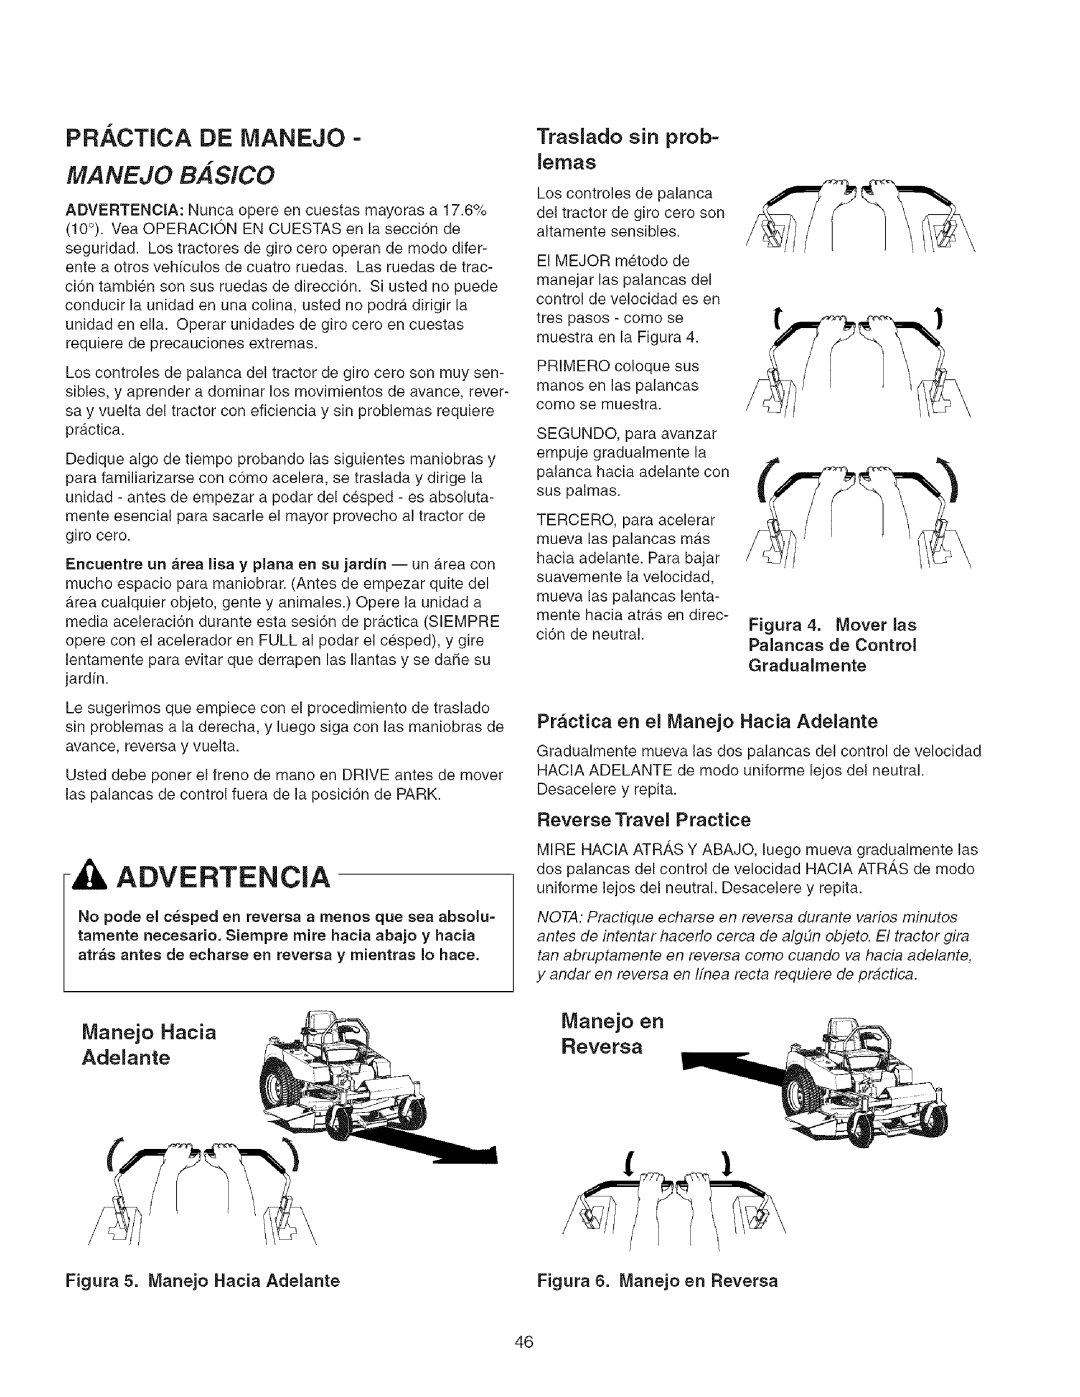 Craftsman 107.27768 manual Pr. ,Ctica De Ivianejo, MANEJO BASlCO, Traslado sin prob=, Manejo Hacia, Manejo en, Adelante 